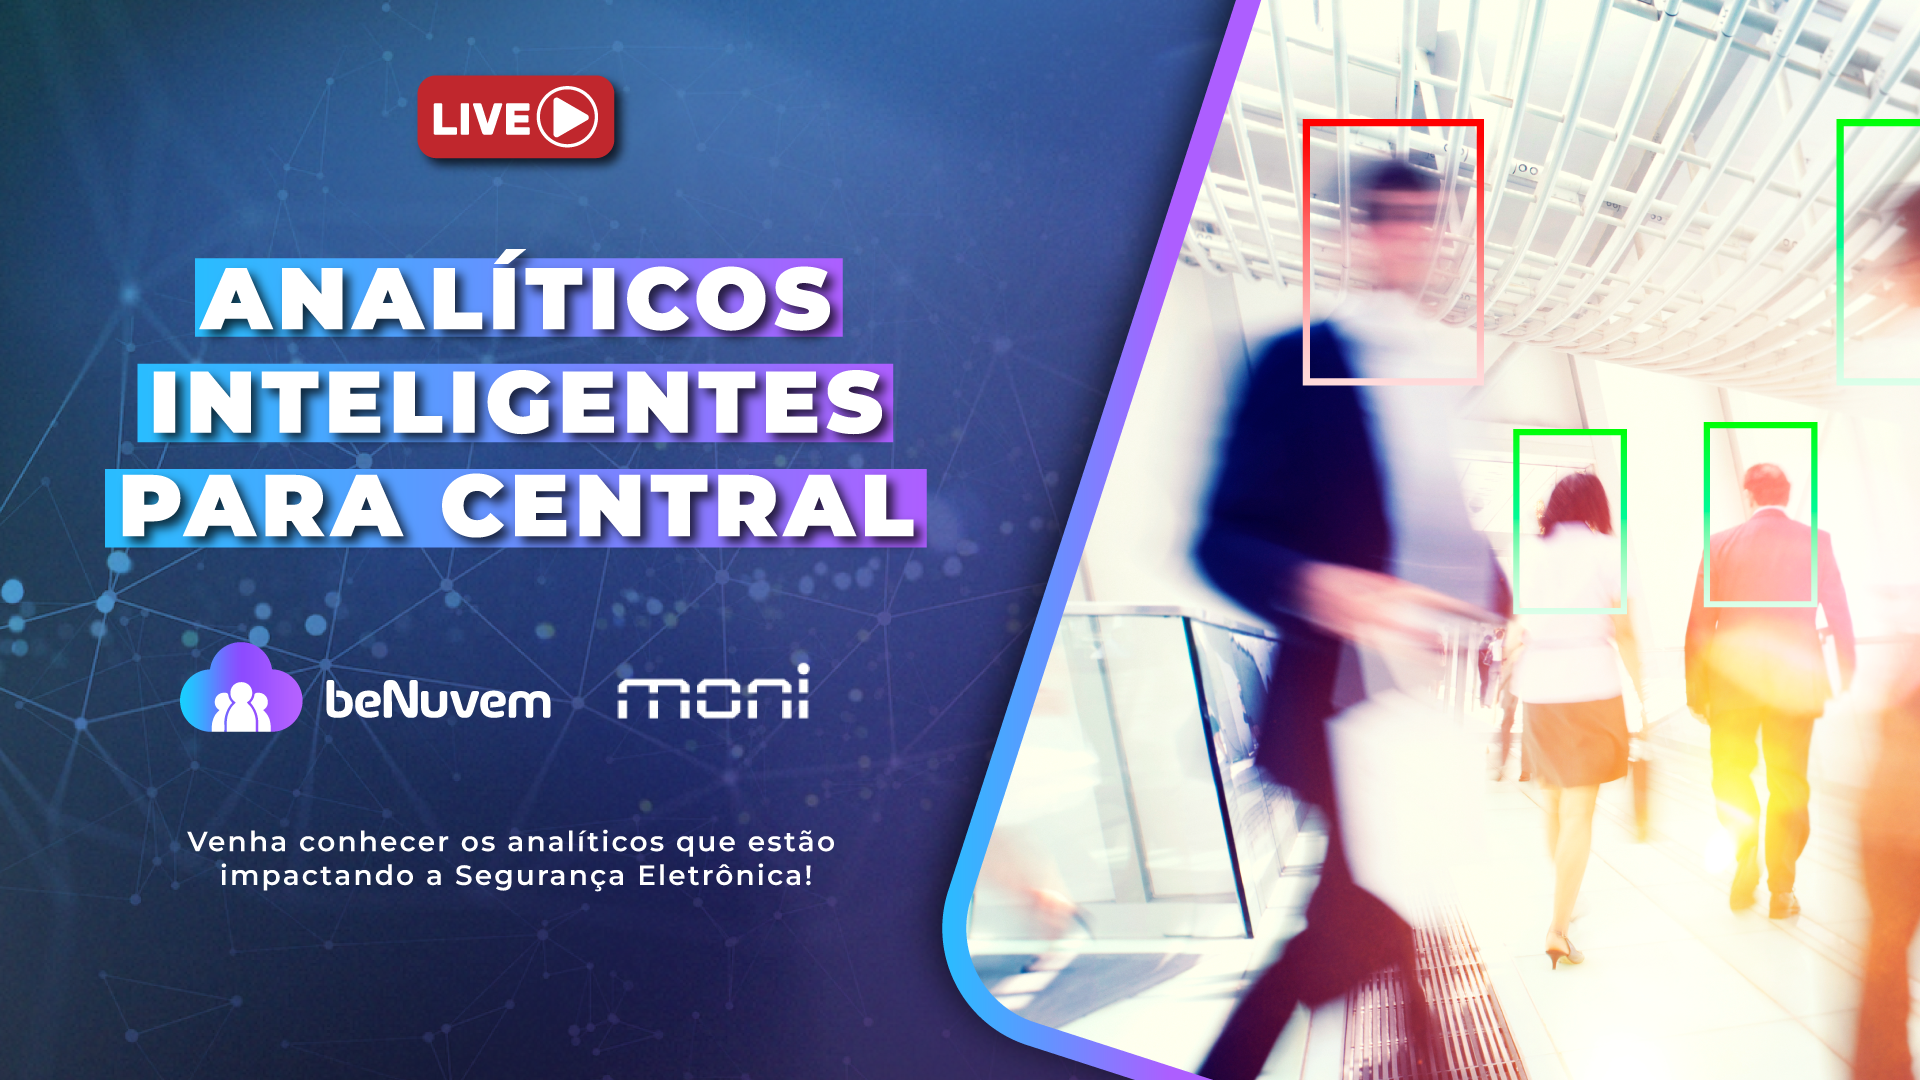 Live "Analíticos Inteligentes para Central" com Moni Software